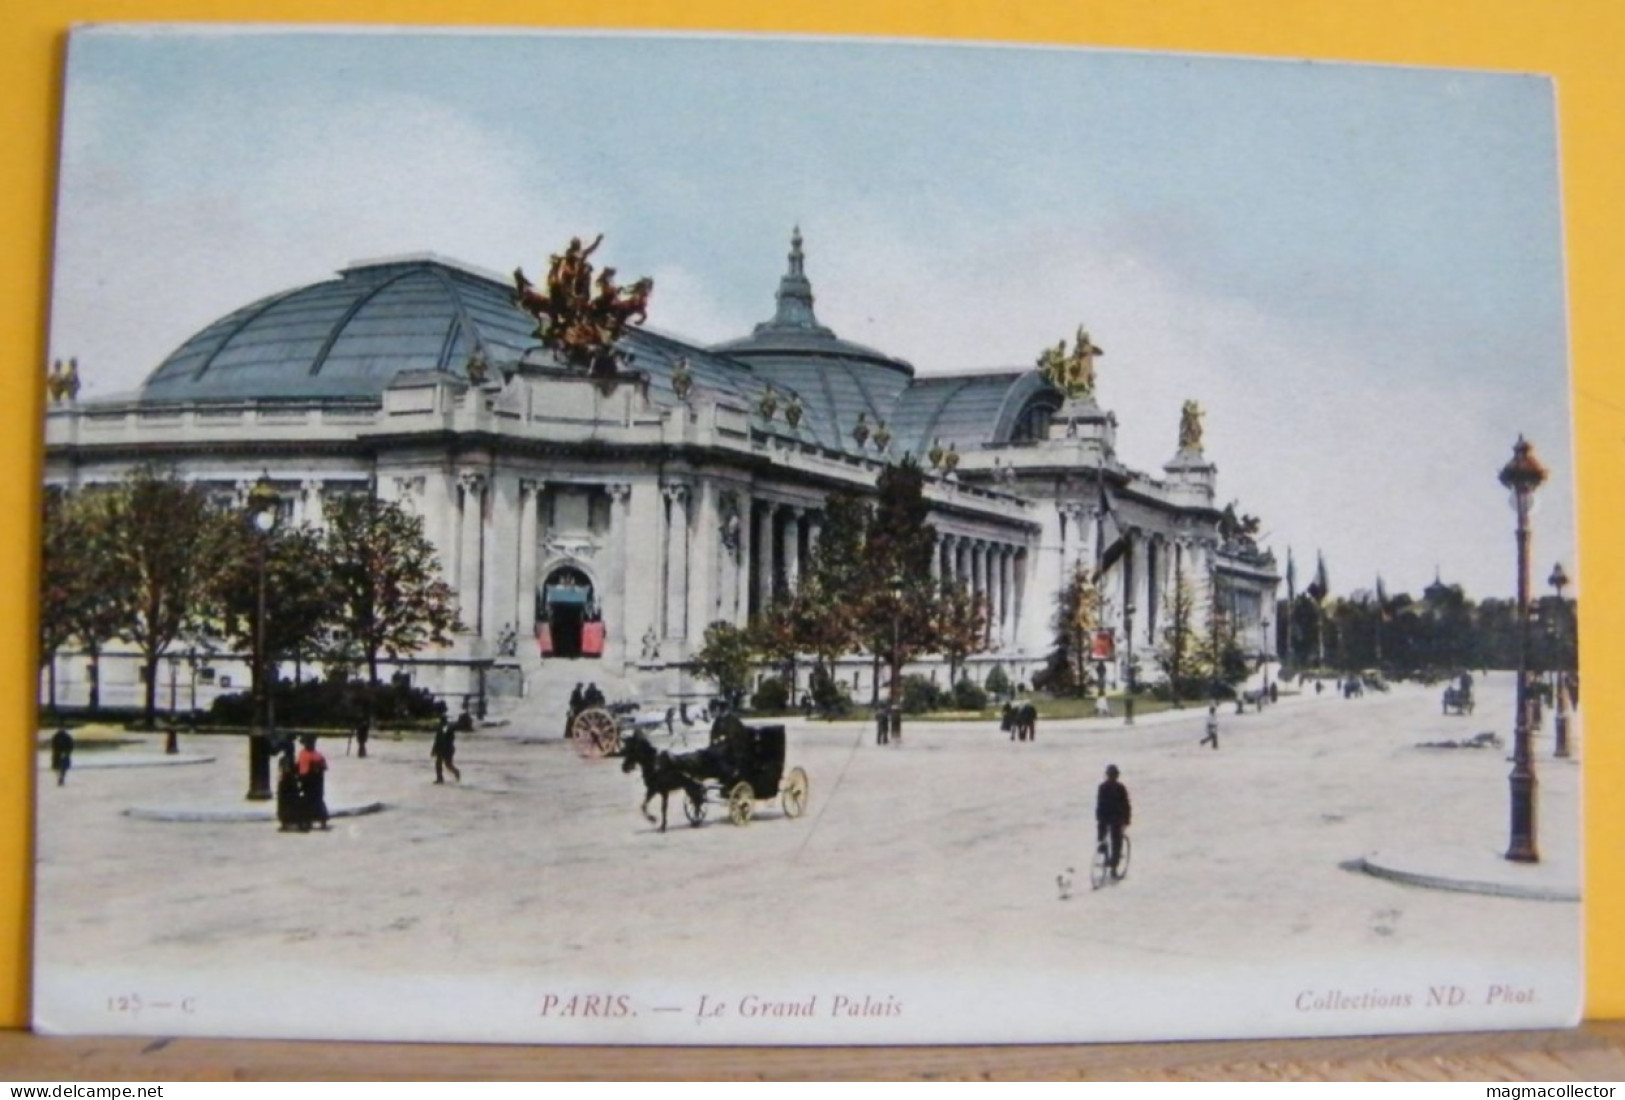 (P1) PARIGI / PARIS - LE GRAND PALAIS  - 125-C - NON VIAGGIATA 1910/20ca - Eglises